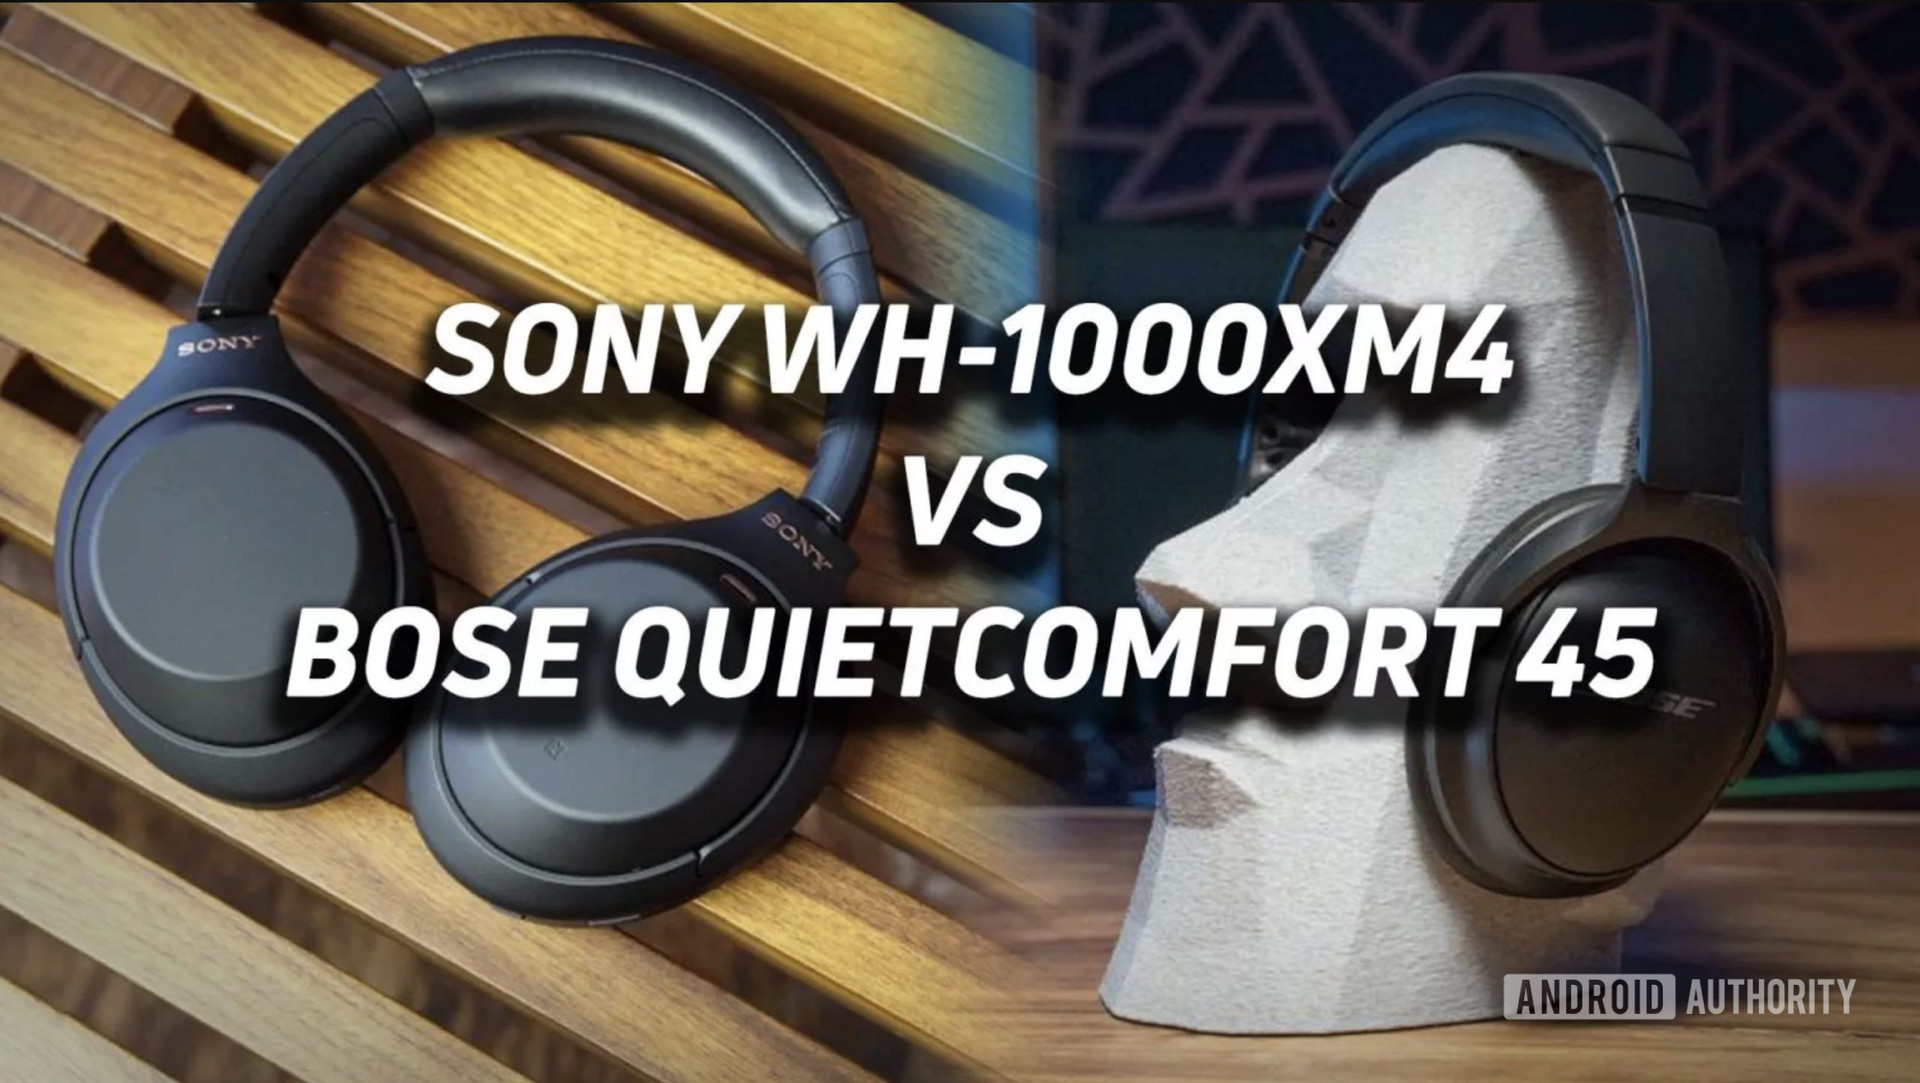 sony wh 1000xm4 vs bose quietcomfort 45